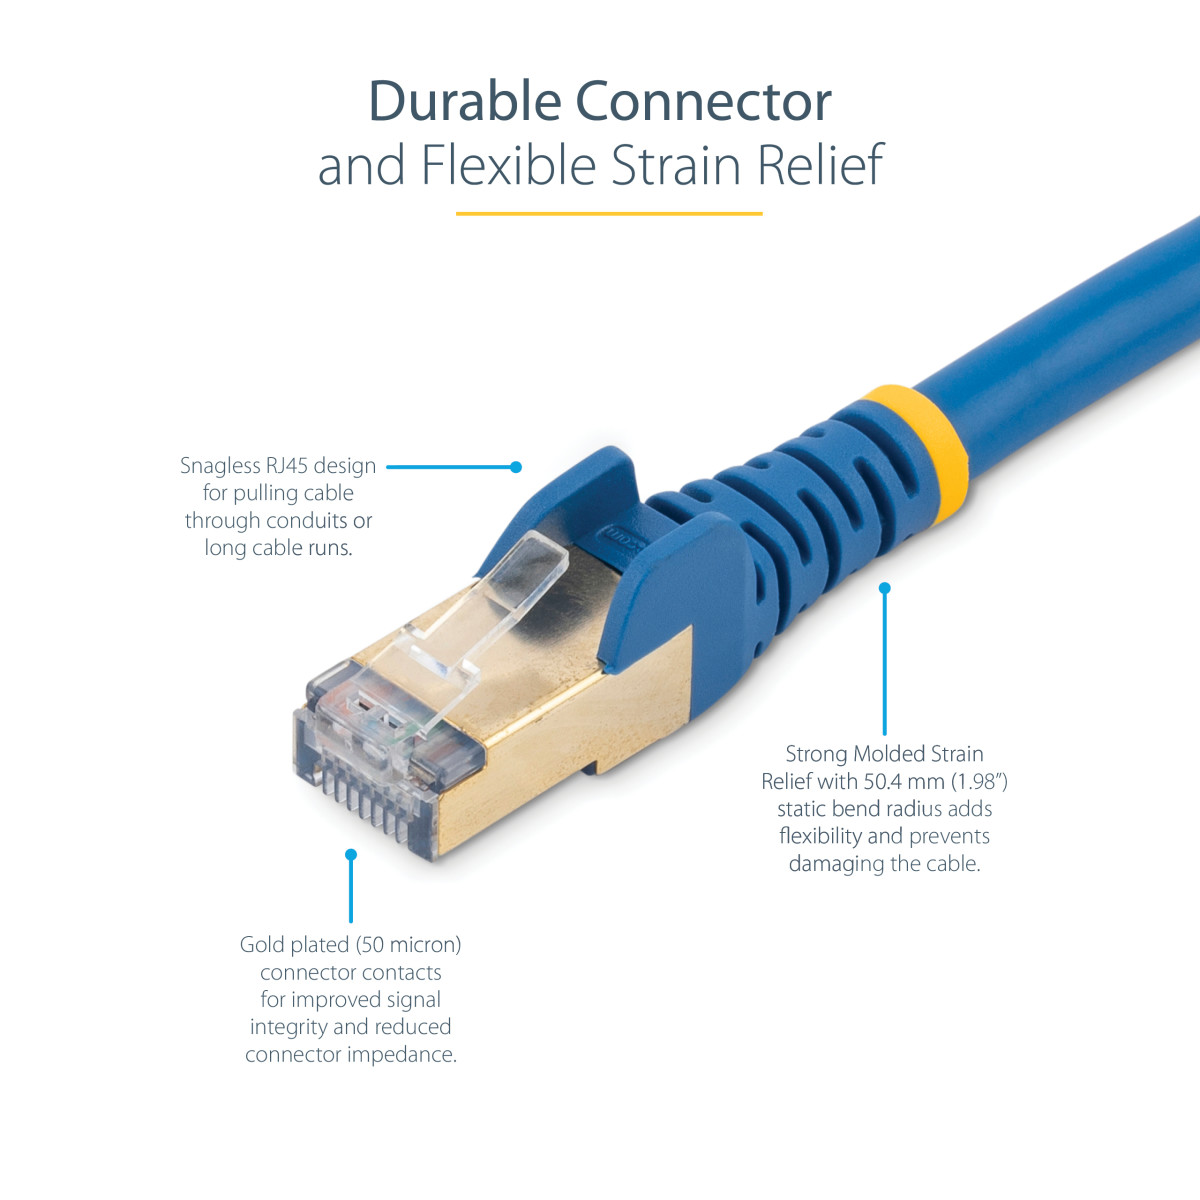 2m Blue Cat6a Ethernet Cable - STP